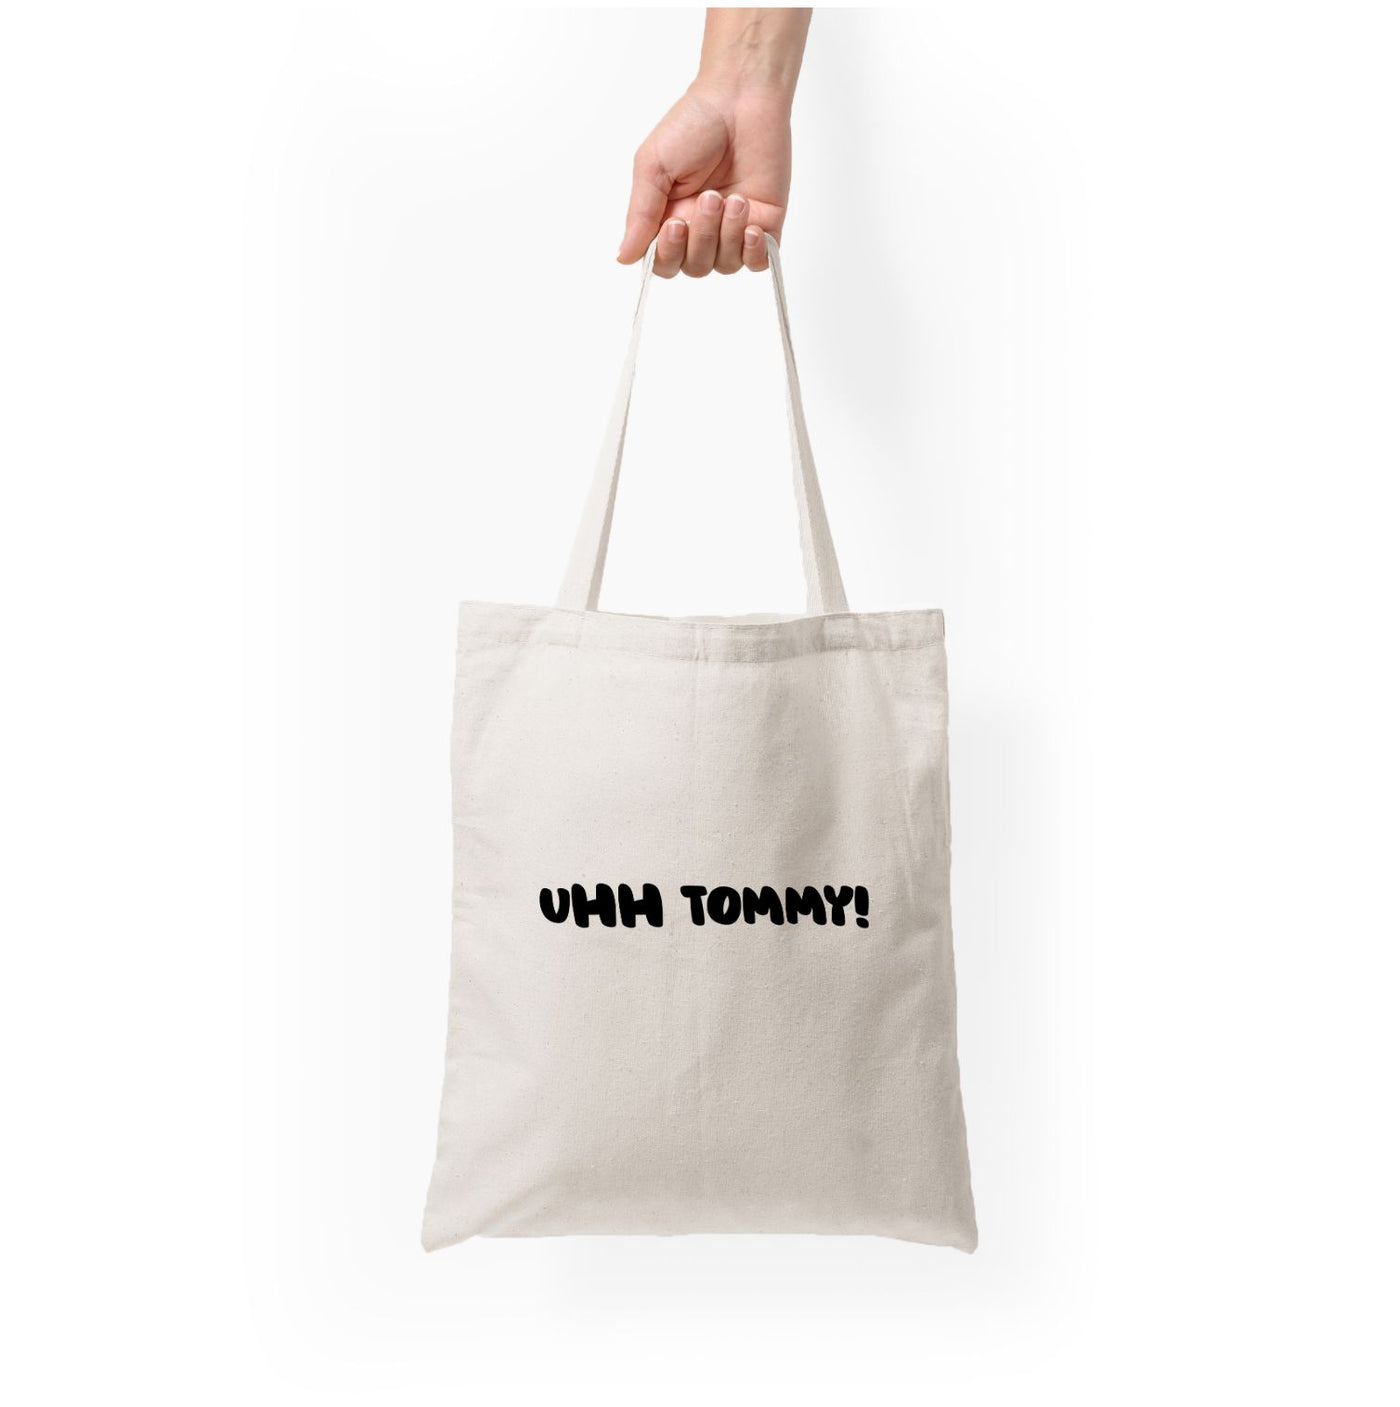 Uhh Tommy! - Islanders Tote Bag